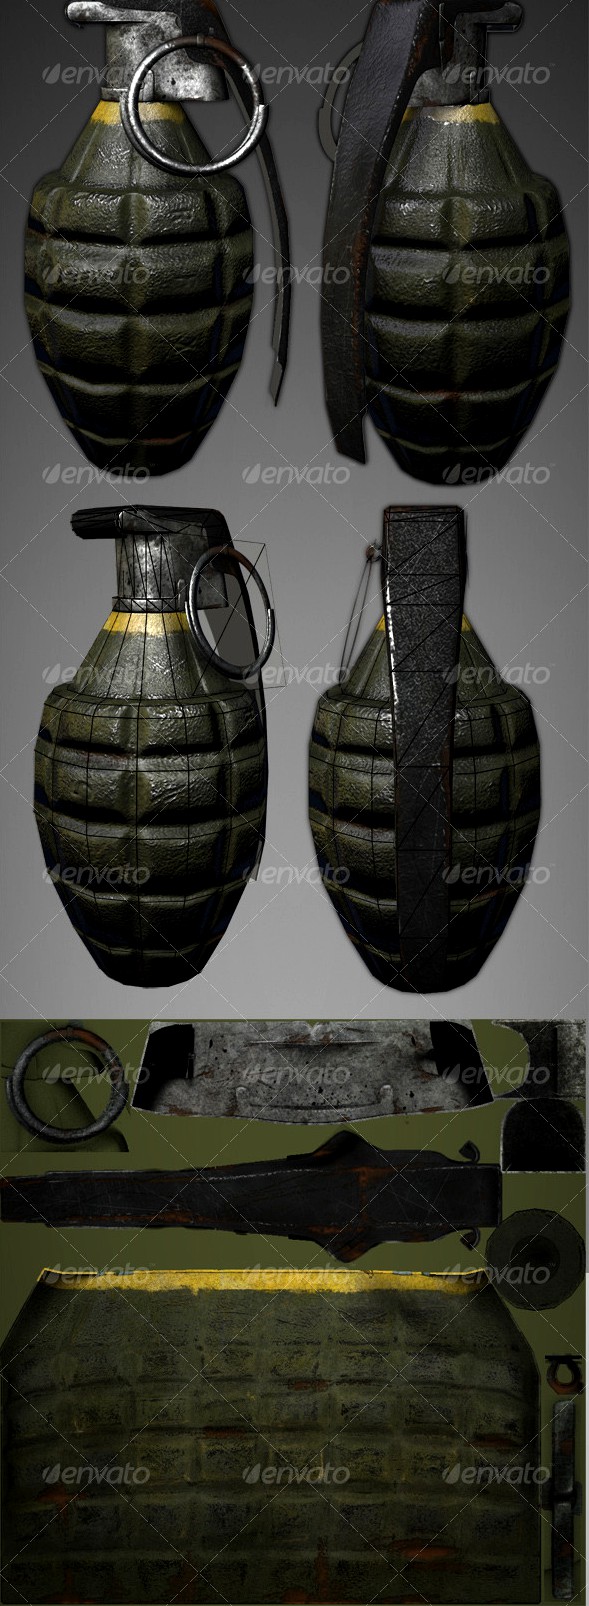 Lowpoly Pineapple Grenade